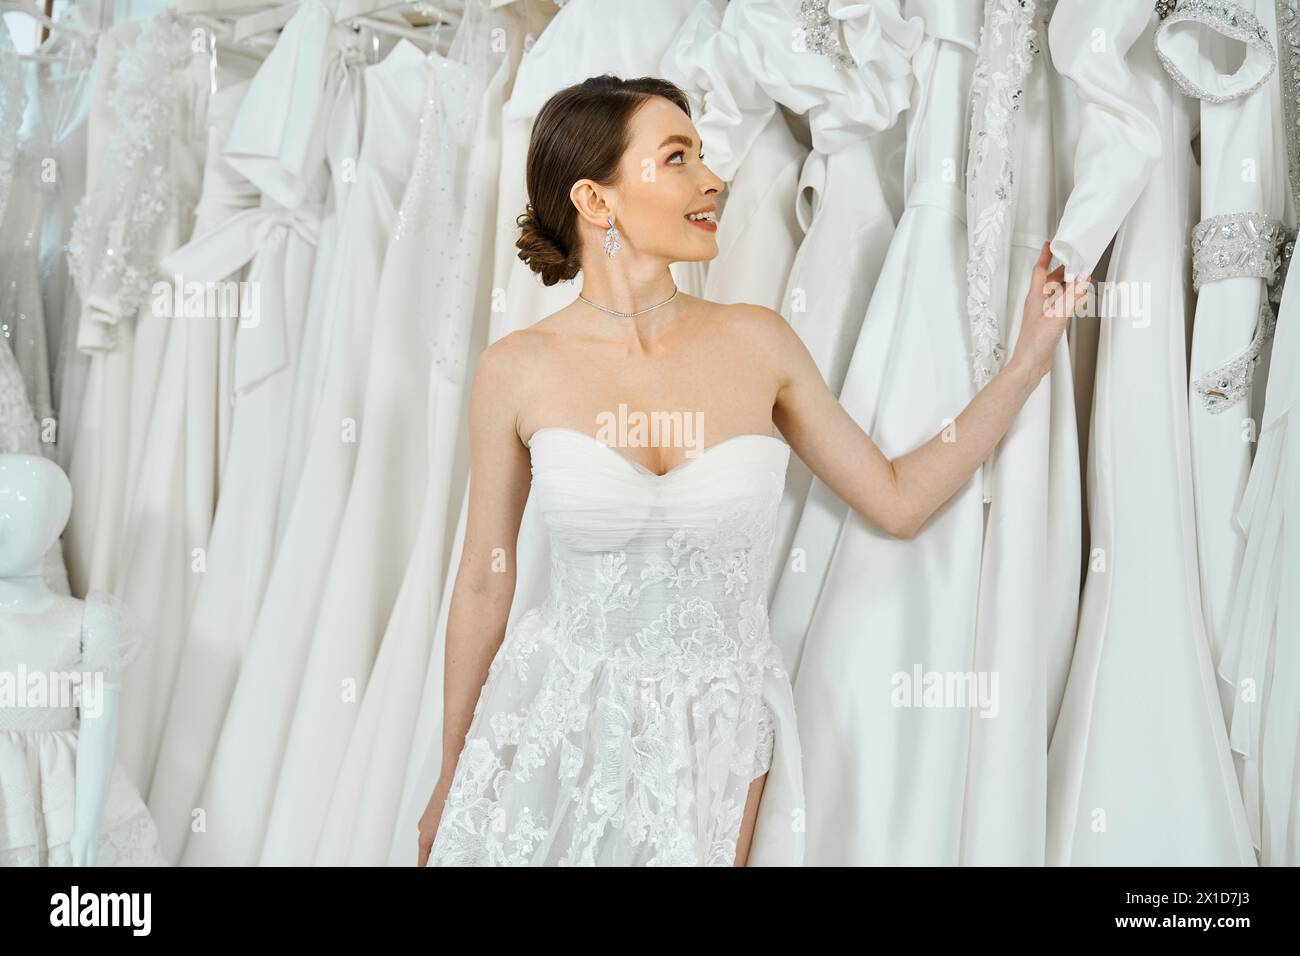 Eine junge, brünette Braut, die in einem Hochzeitssalon zwischen verschiedenen Kleidern steht. Stockfoto